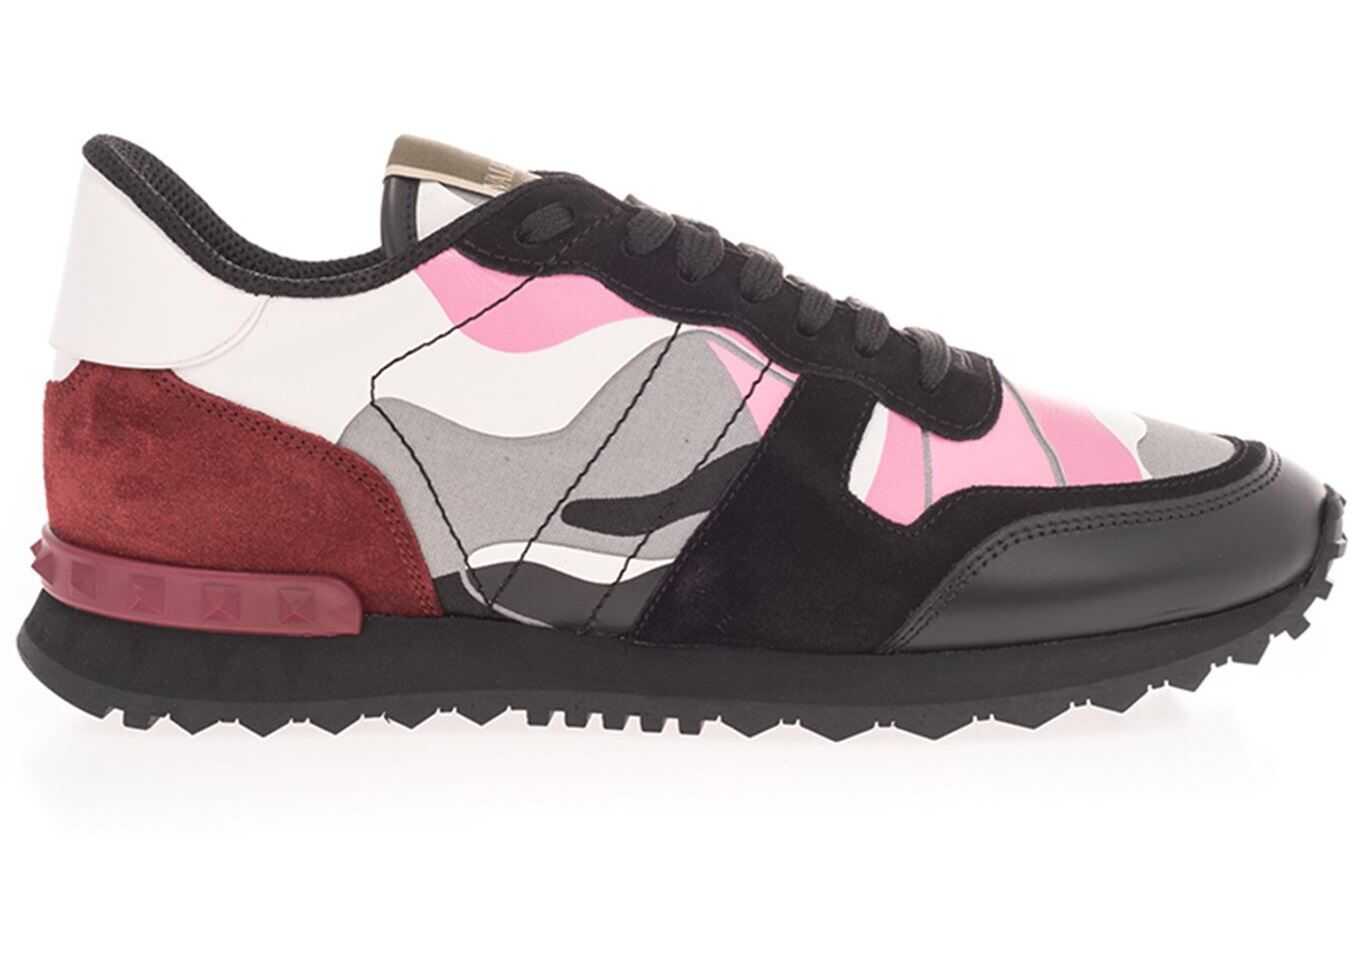 Valentino Garavani Rockrunner Sneakers In Pink And Black Black